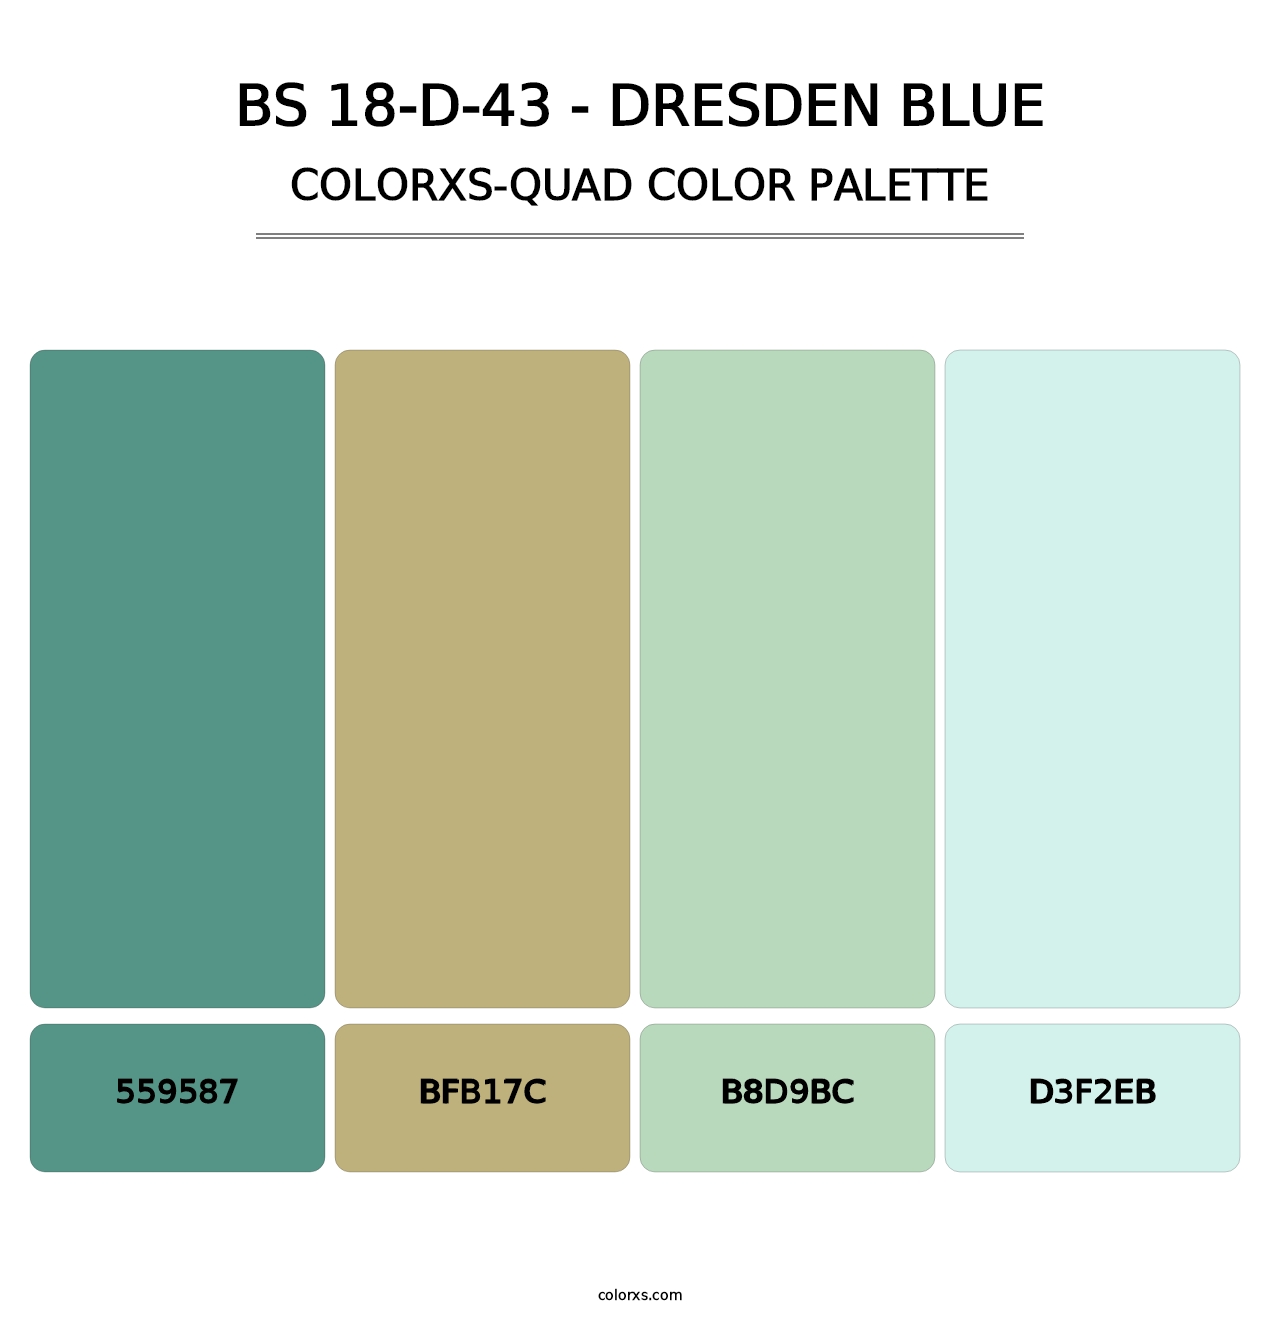 BS 18-D-43 - Dresden Blue - Colorxs Quad Palette